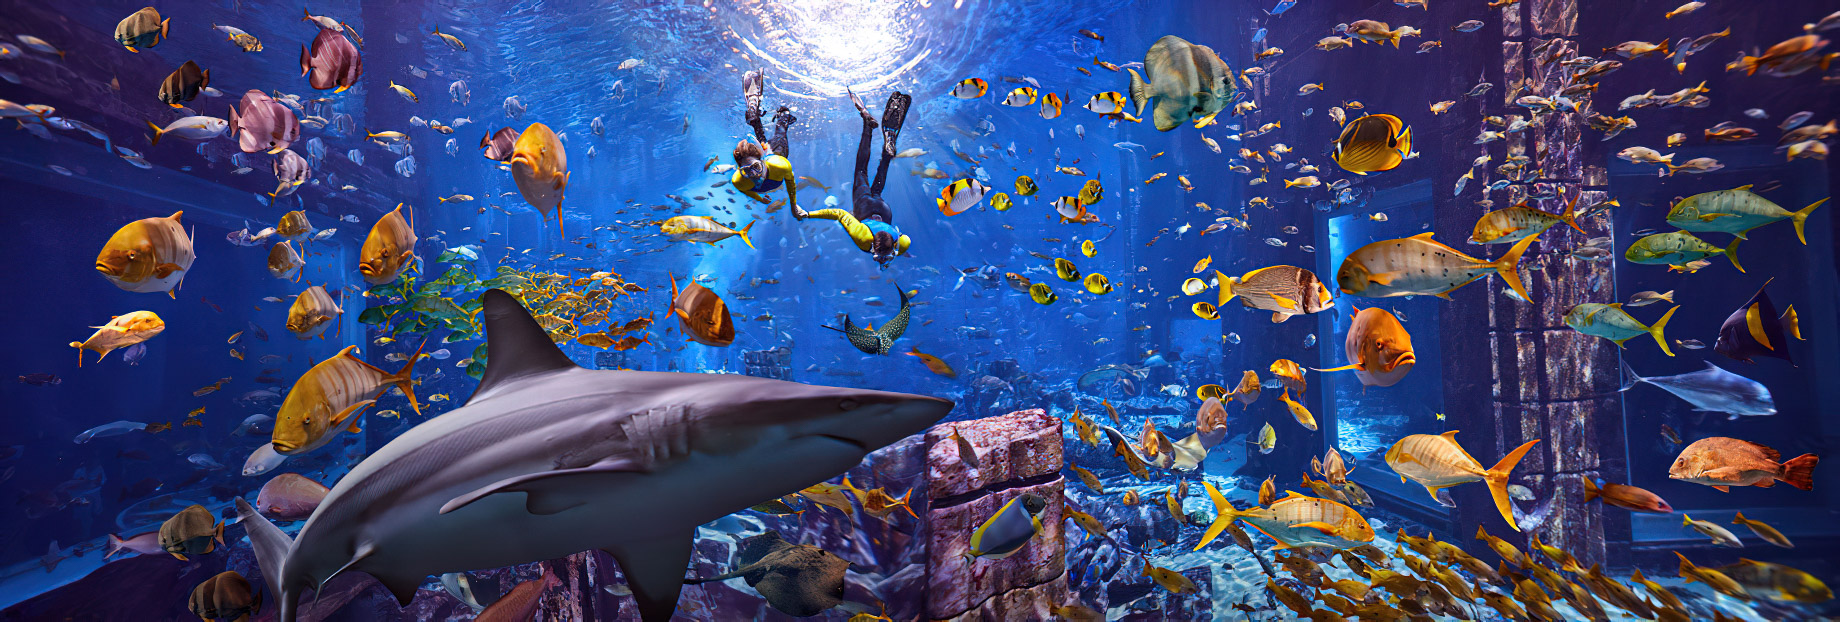 Atlantis The Palm Resort – Crescent Rd, Dubai, UAE – Underwater Snorkelling Adventure